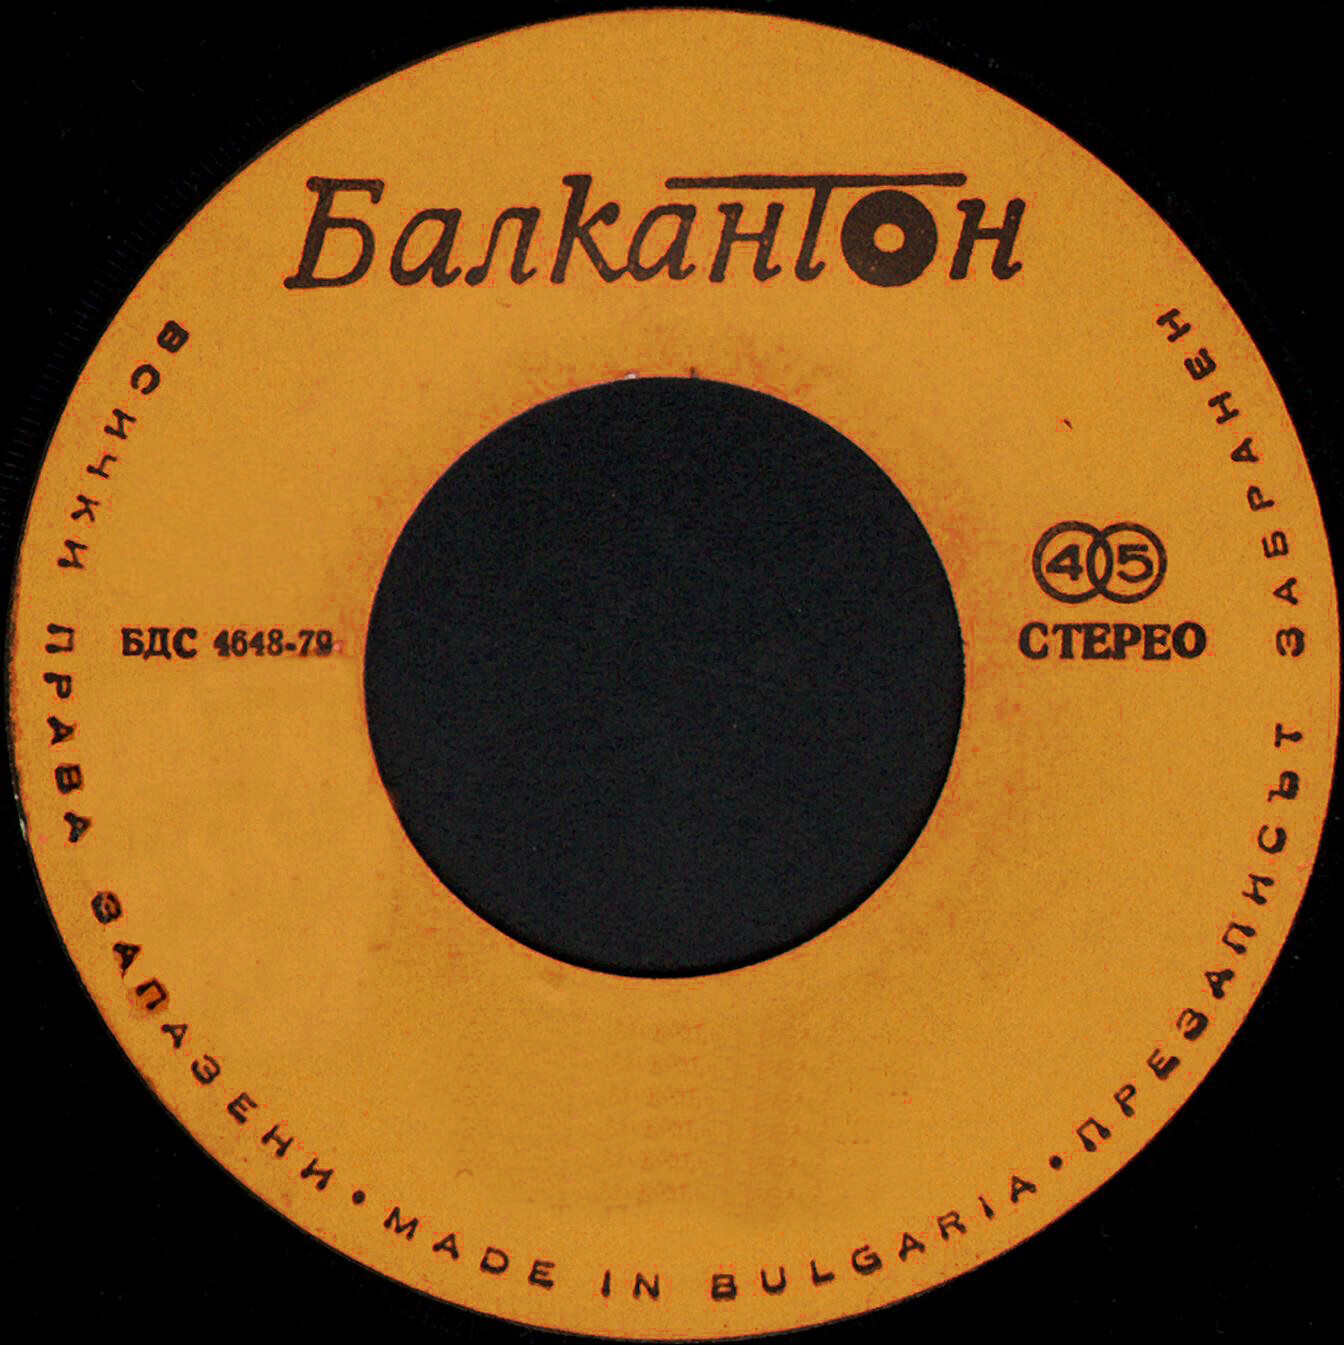 БДС 4648-79 жълт/оранж, стерео, с дупка и надписа "Балкантон" - малки плочи